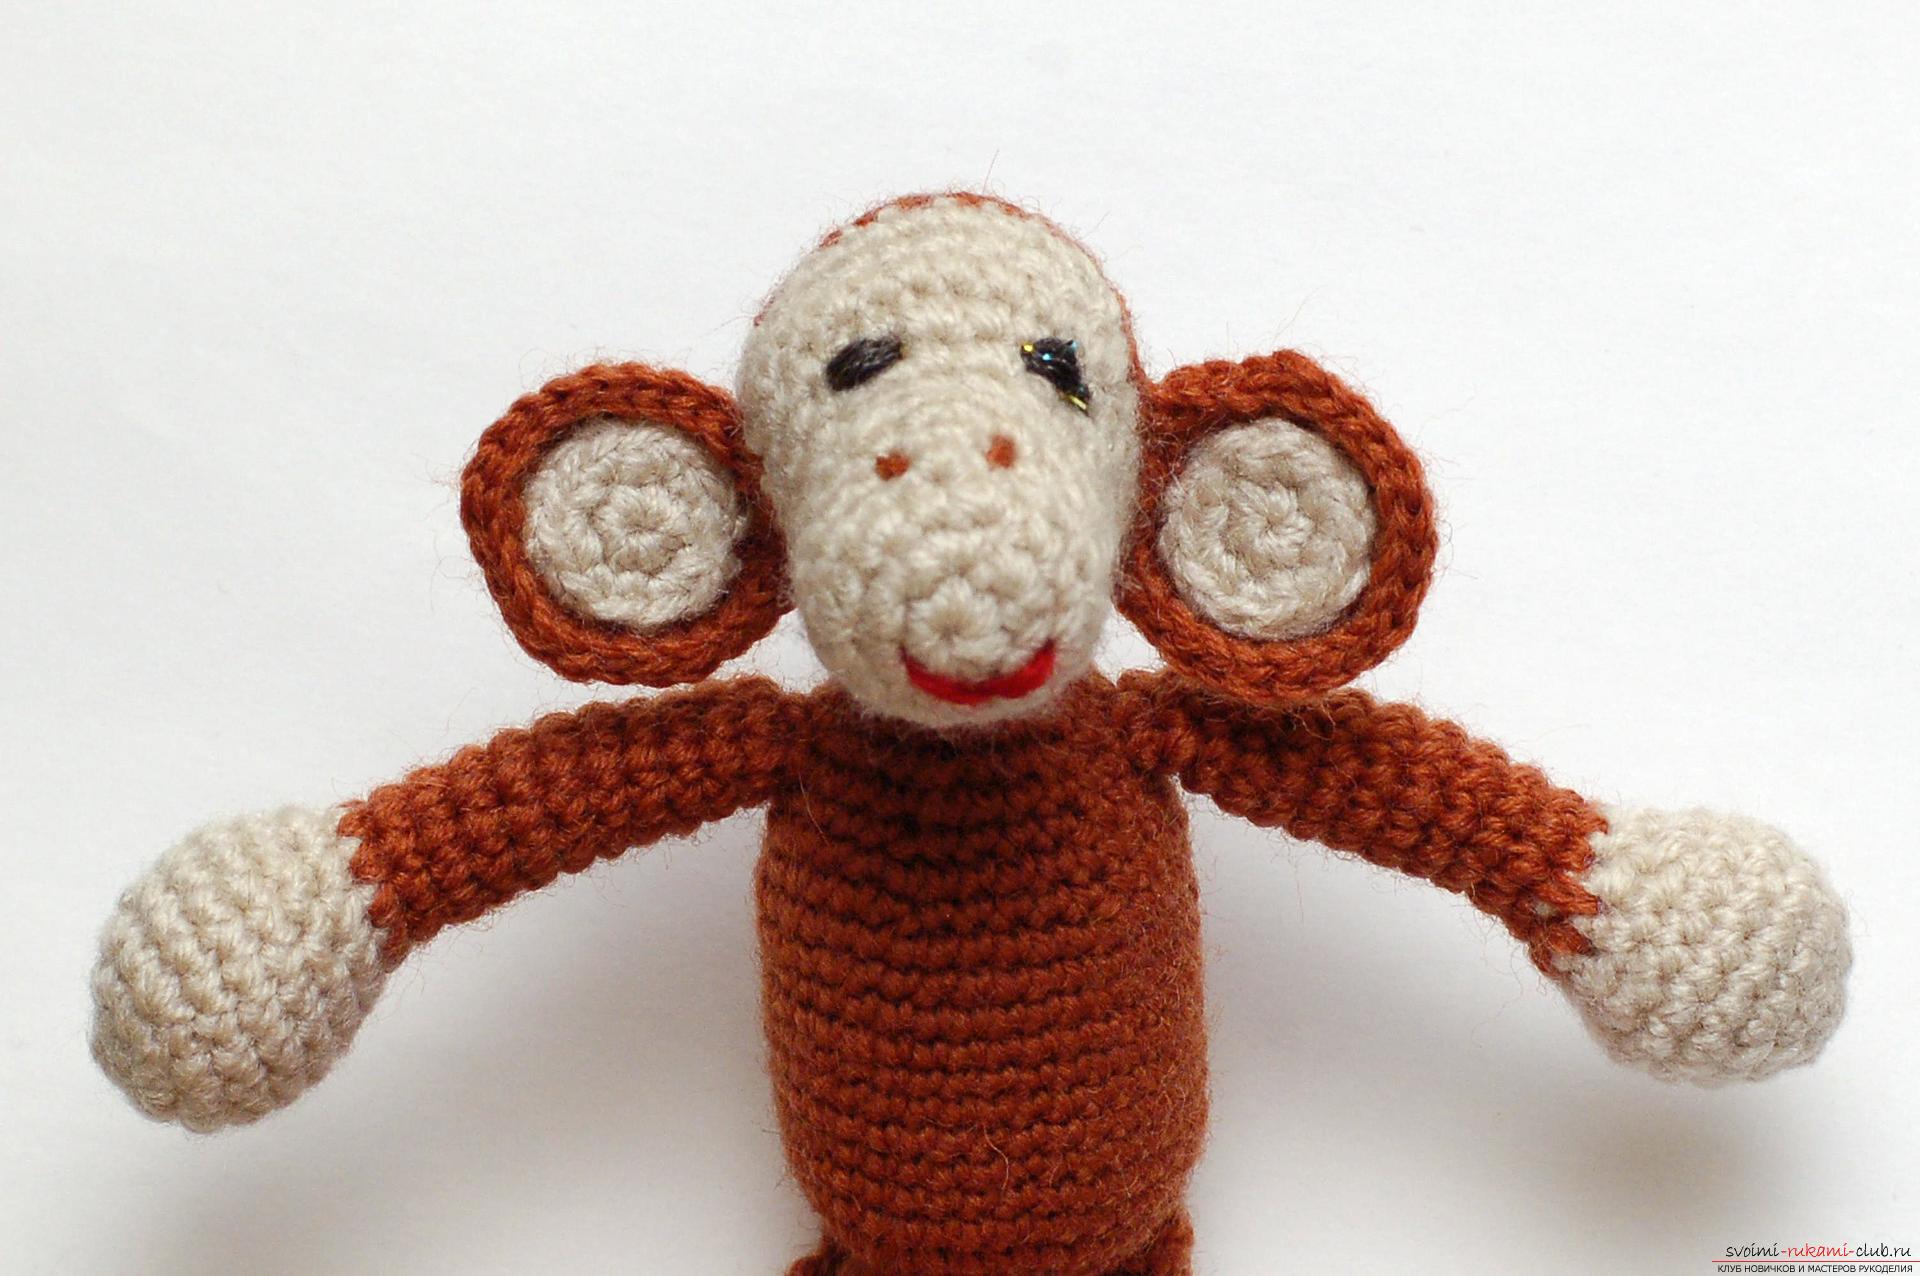 Мастер-класс изготовления игрушки своими руками для начинающих вязать крючком – обезьянка на новый год.. Фото №23